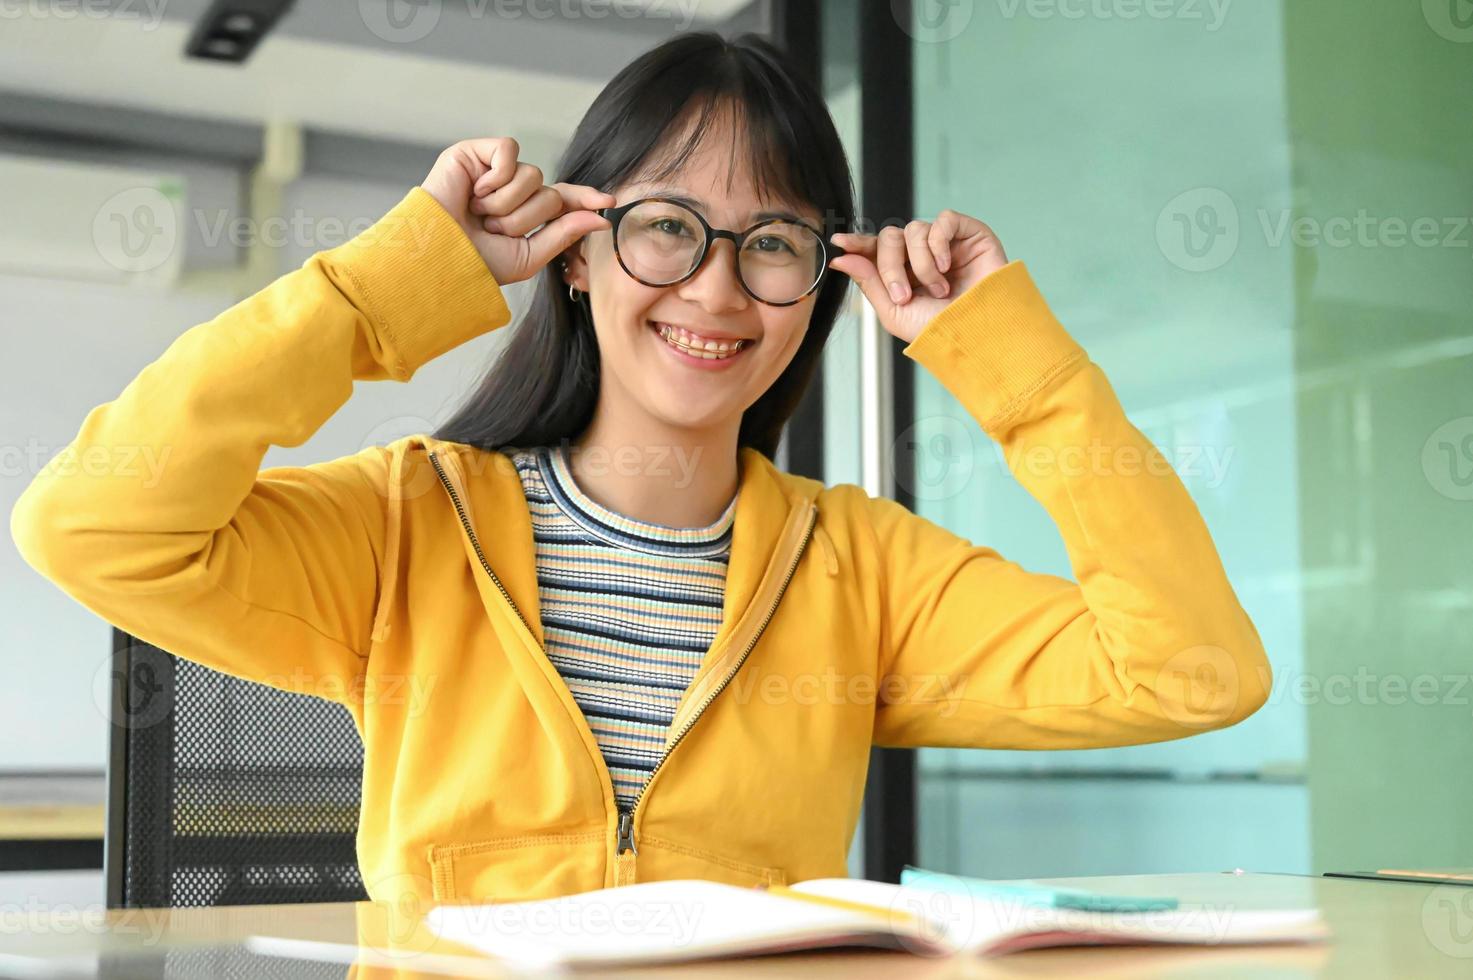 estudiante asiática con gafas y sonrió a la cámara. ella está leyendo libros de preparación para exámenes. foto